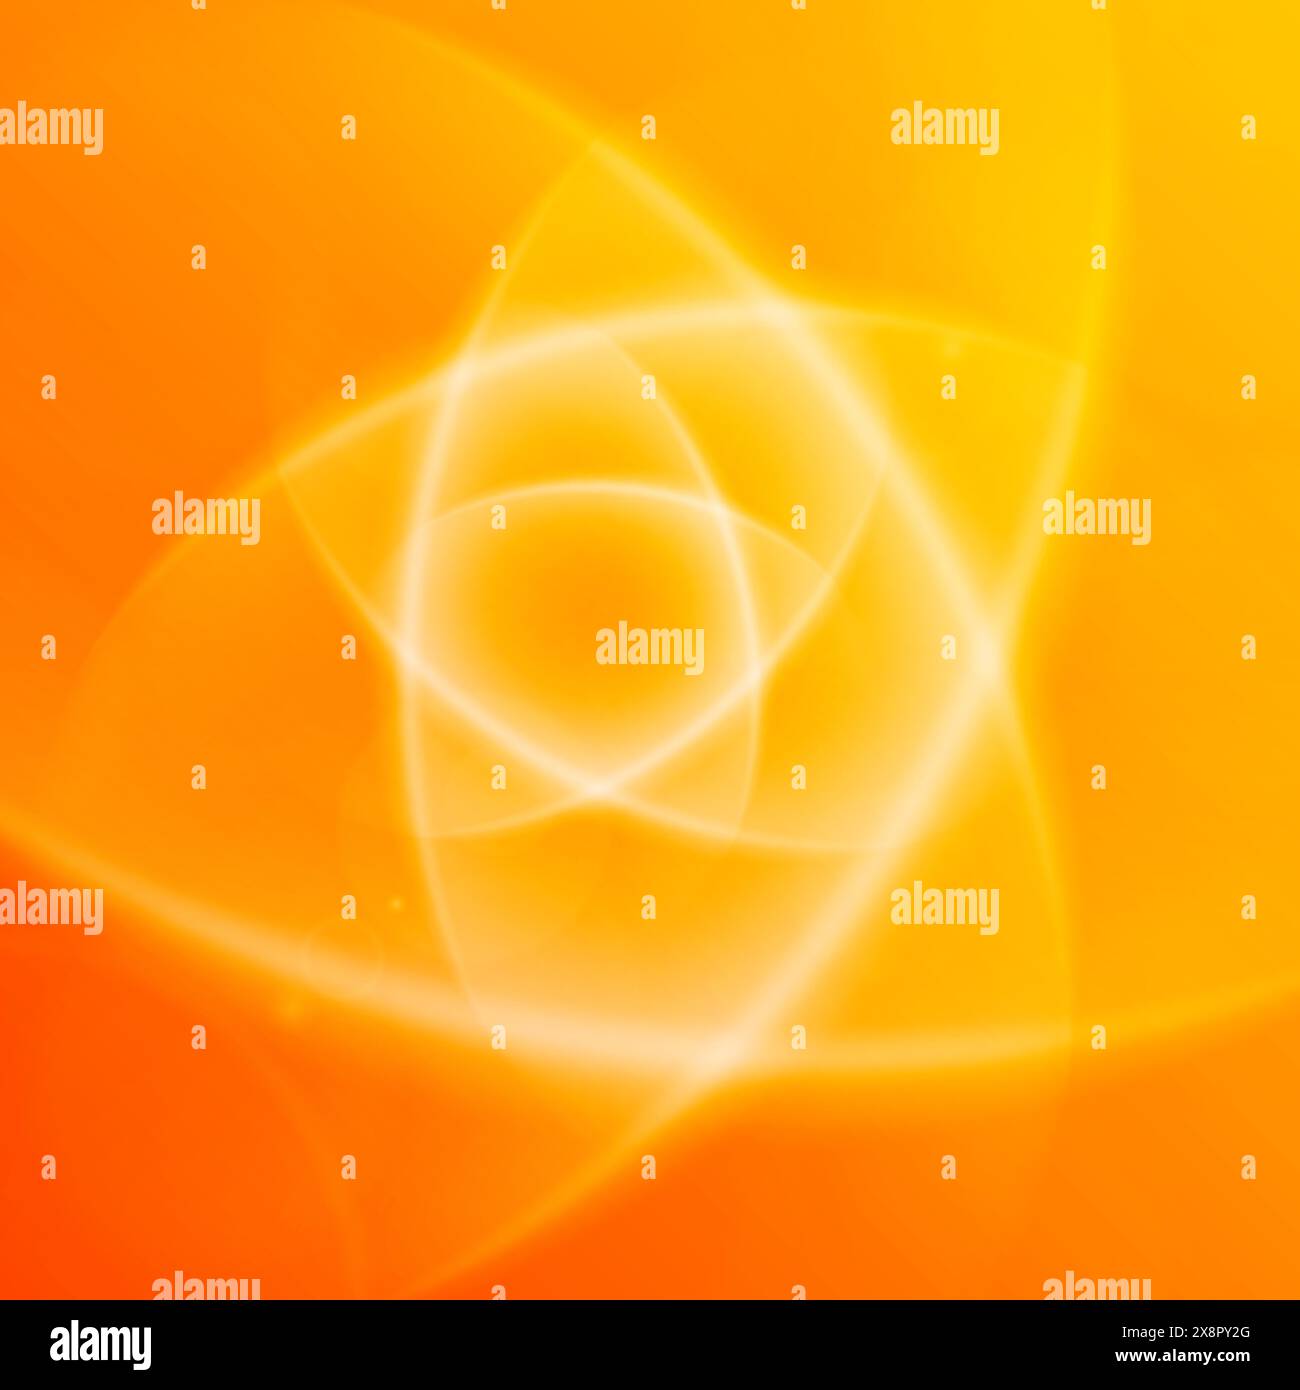 Una sfumatura di tonalità arancioni forma uno sfondo astratto con più cerchi trasparenti sovrapposti, creando un effetto visivo dinamico e rilassante. Illustrazione Vettoriale